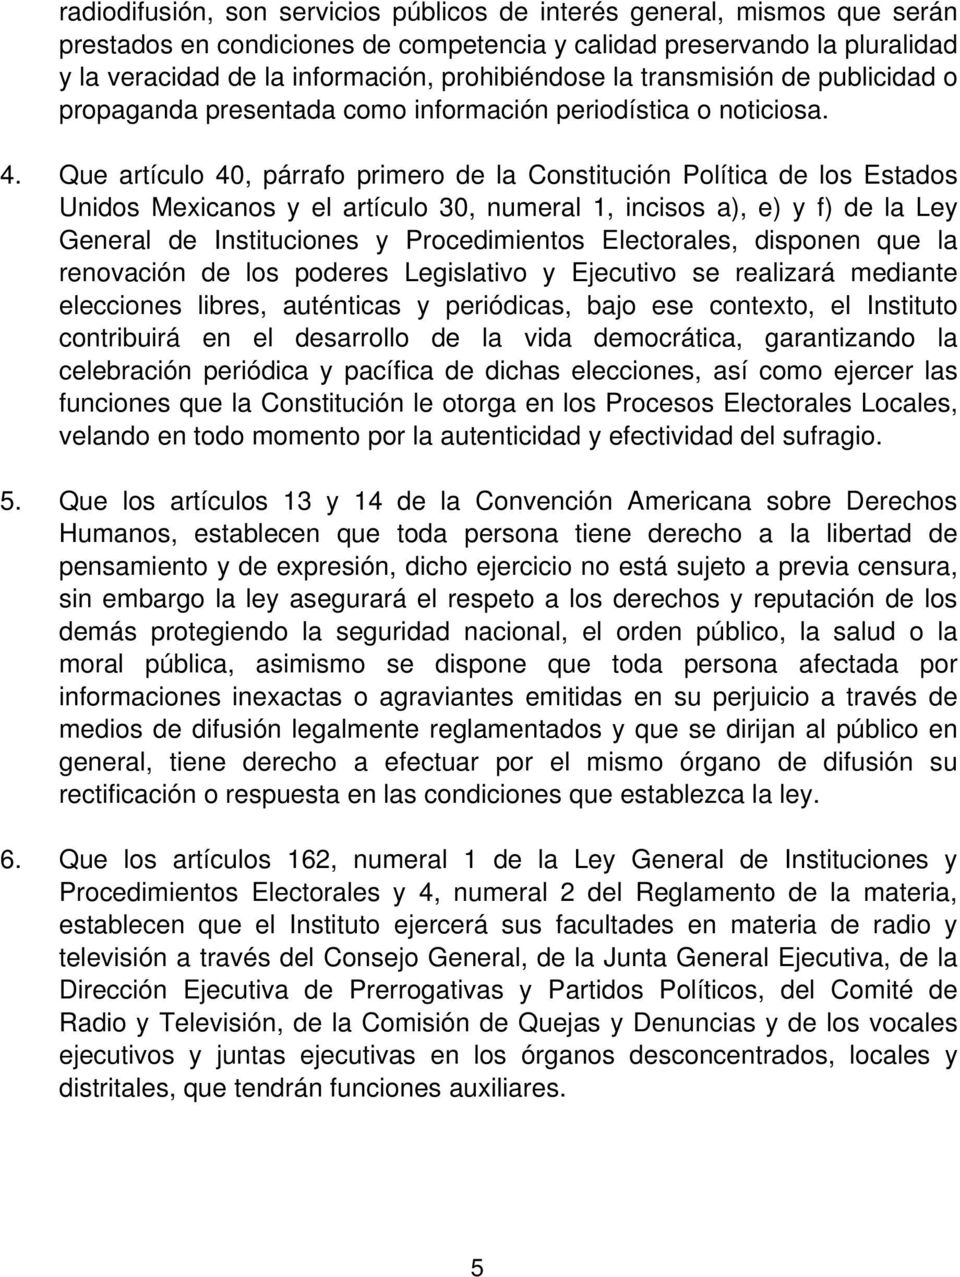 Que artículo 40, párrafo primero de la Constitución Política de los Estados Unidos Mexicanos y el artículo 30, numeral 1, incisos a), e) y f) de la Ley General de Instituciones y Procedimientos